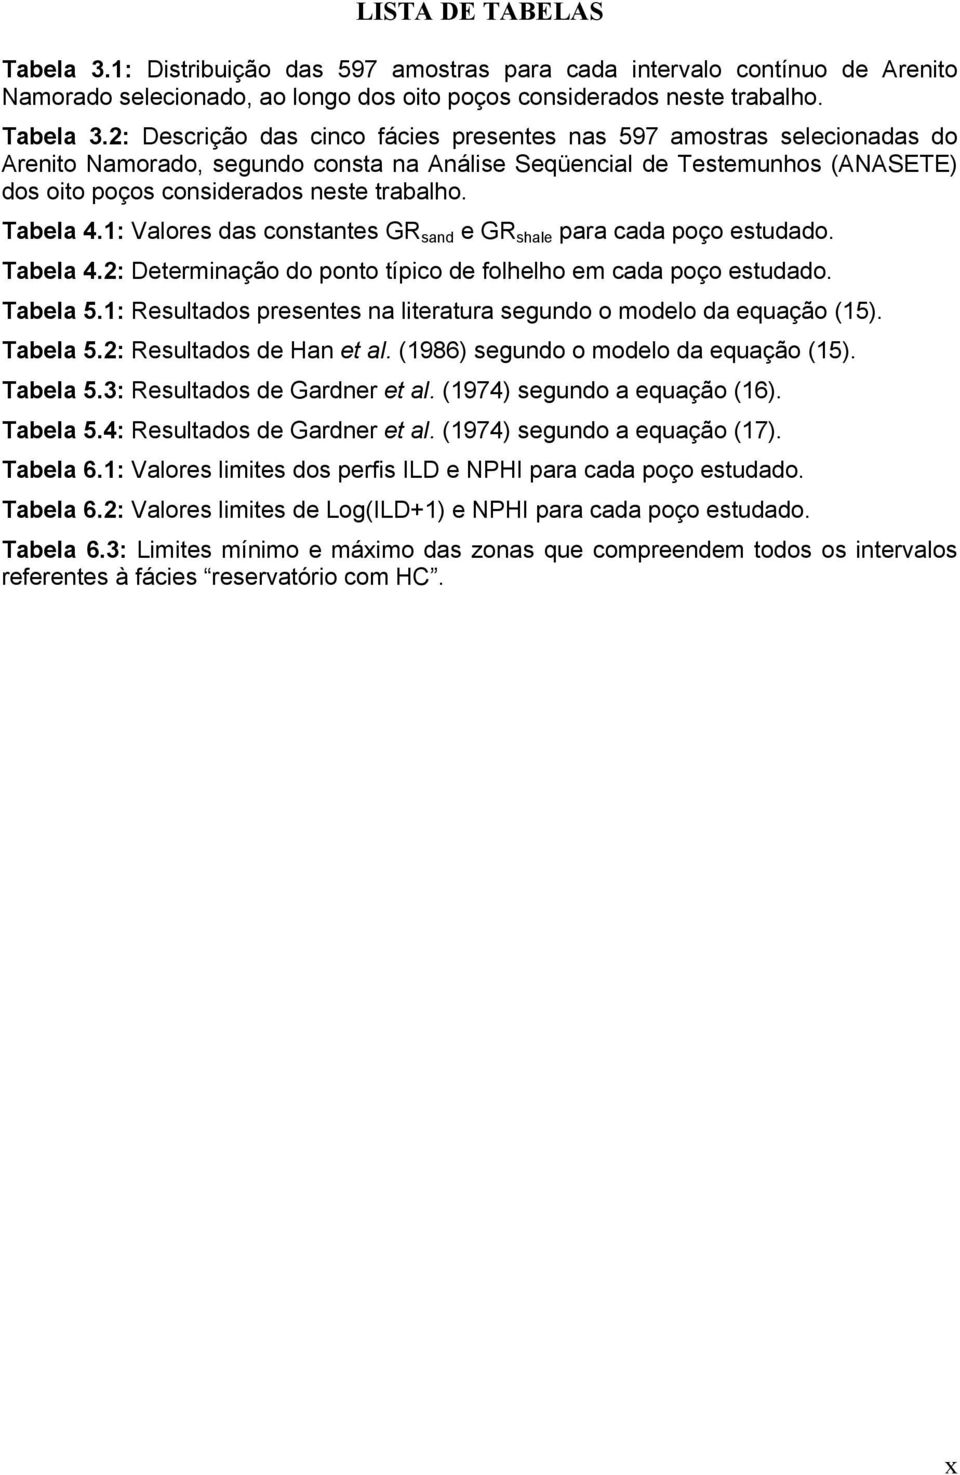 2: Descrição das cinco fácies presentes nas 597 amostras selecionadas do Arenito Namorado, segundo consta na Análise Seqüencial de Testemunhos (ANASETE) dos oito poços considerados neste trabalho.